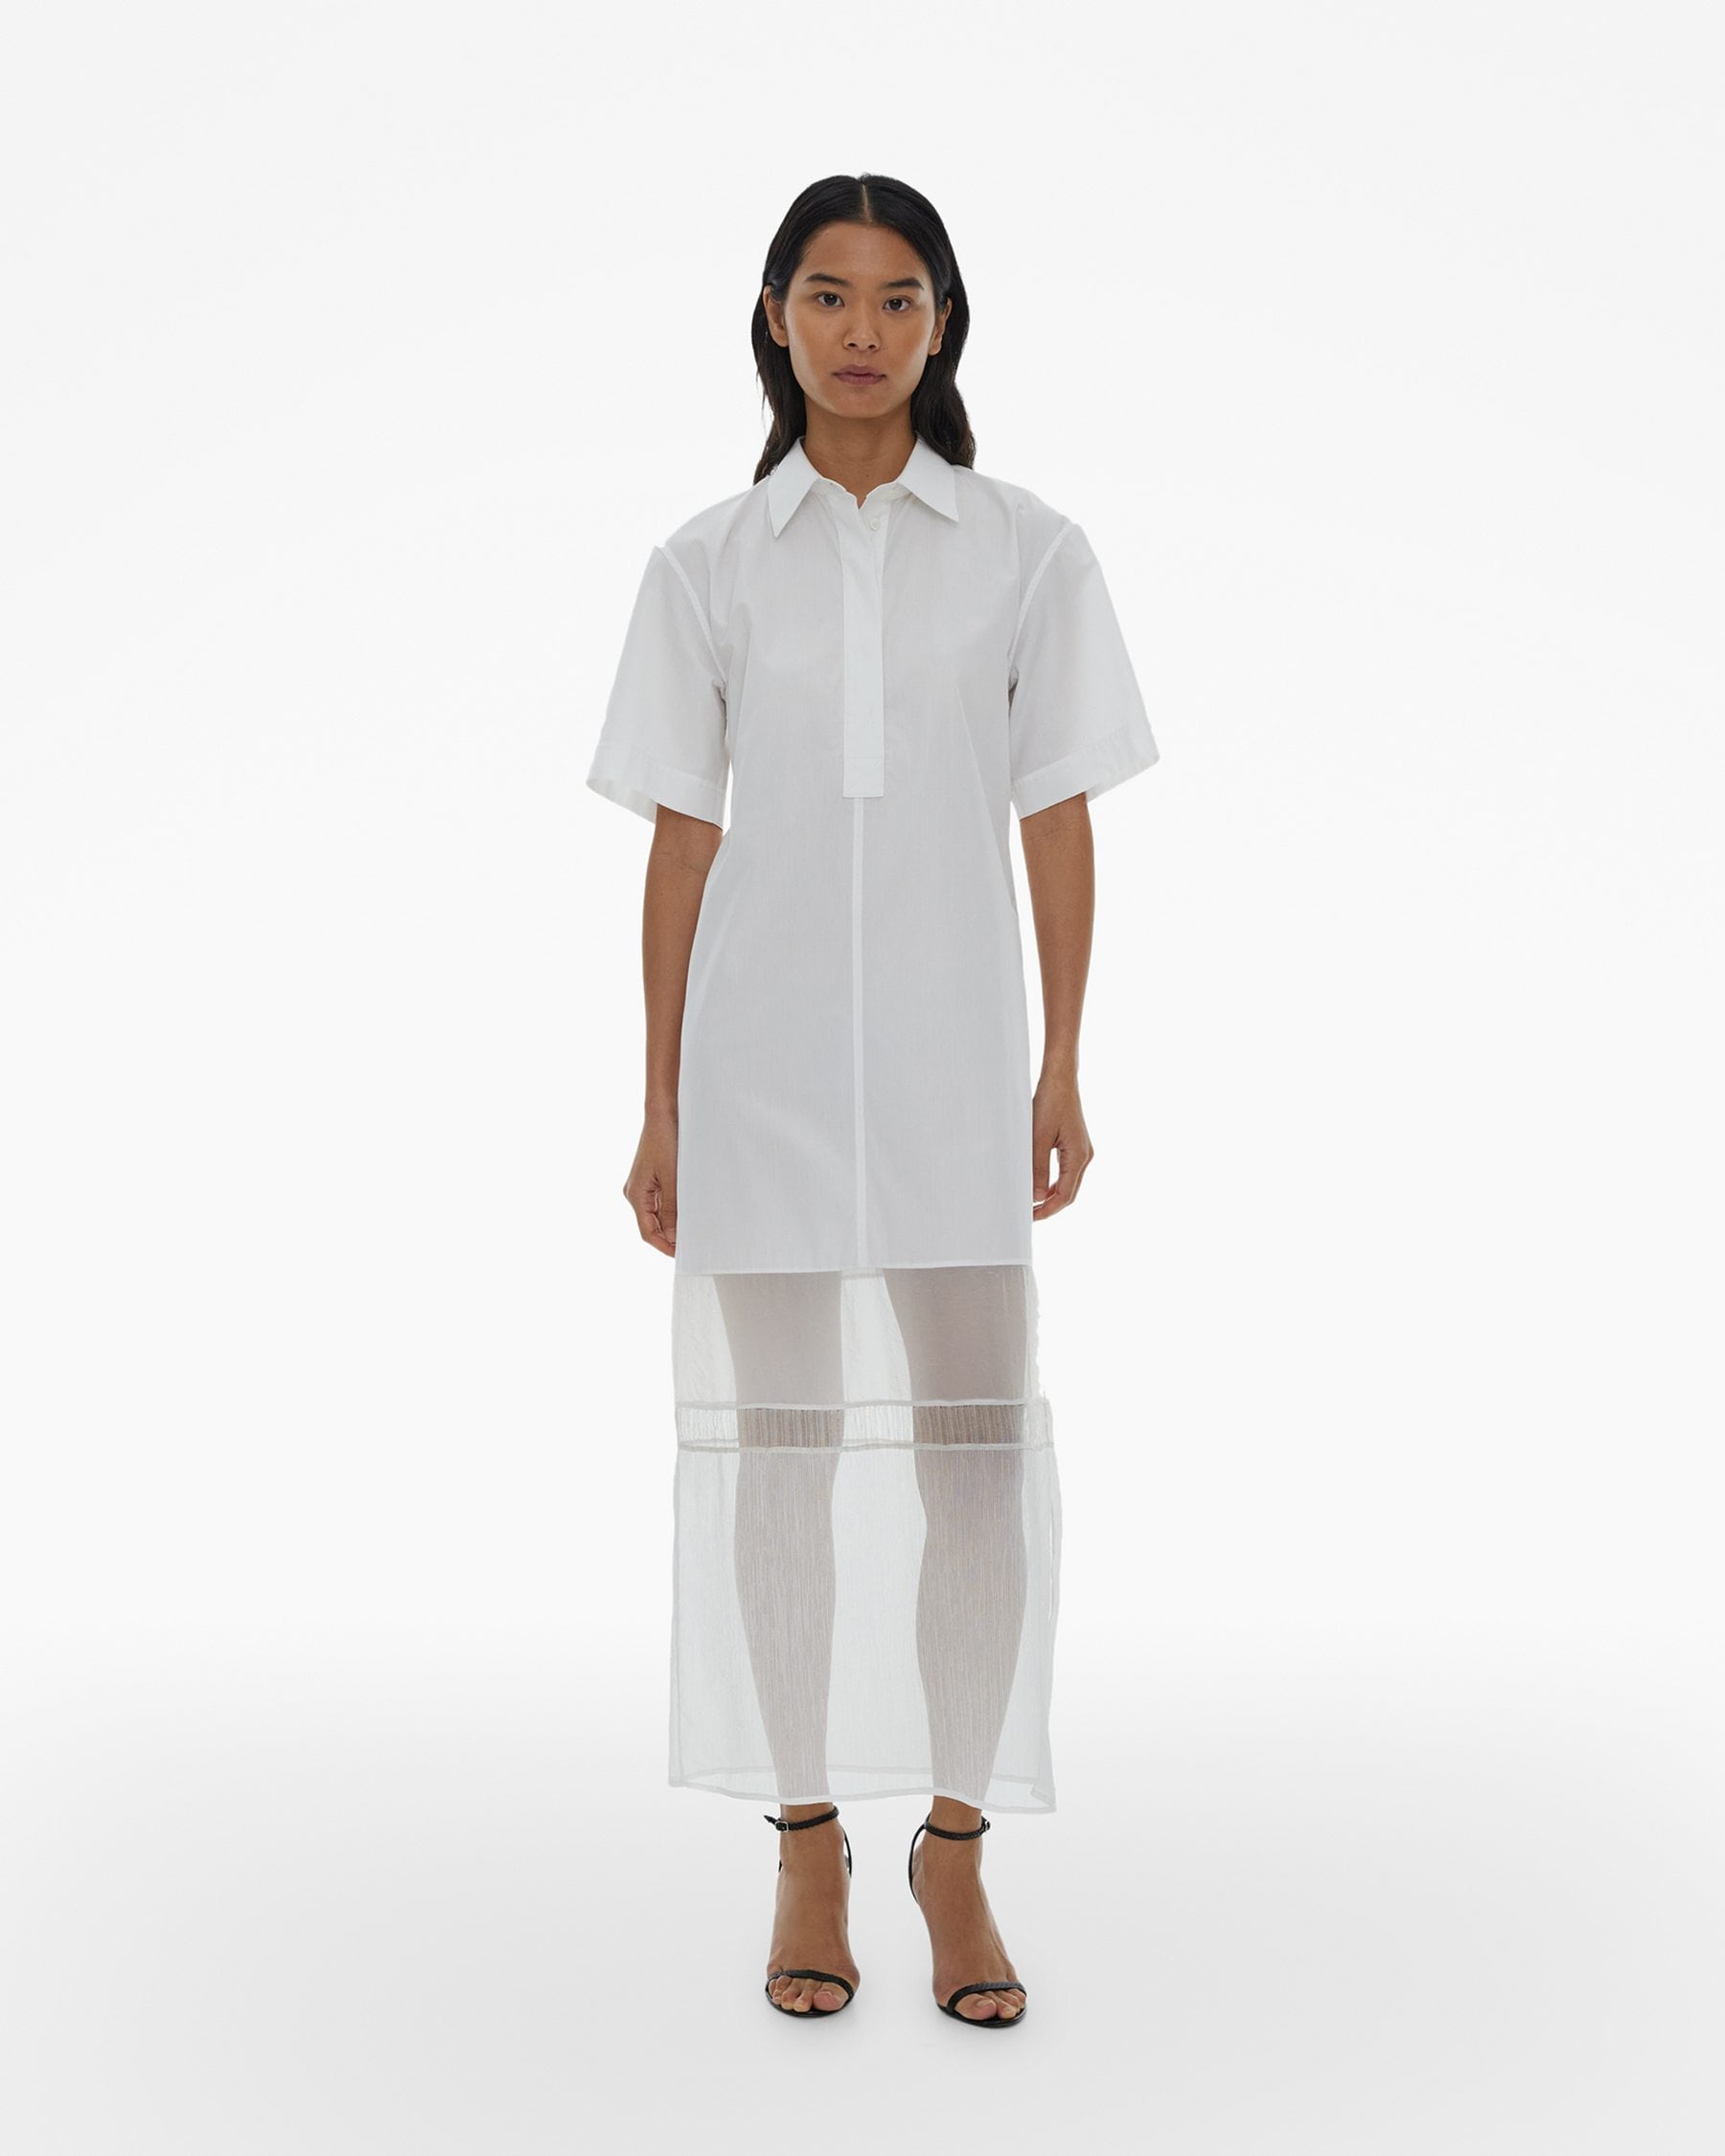 Helmut Lang Combo Shirt Dress | WWW.HELMUTLANG.COM